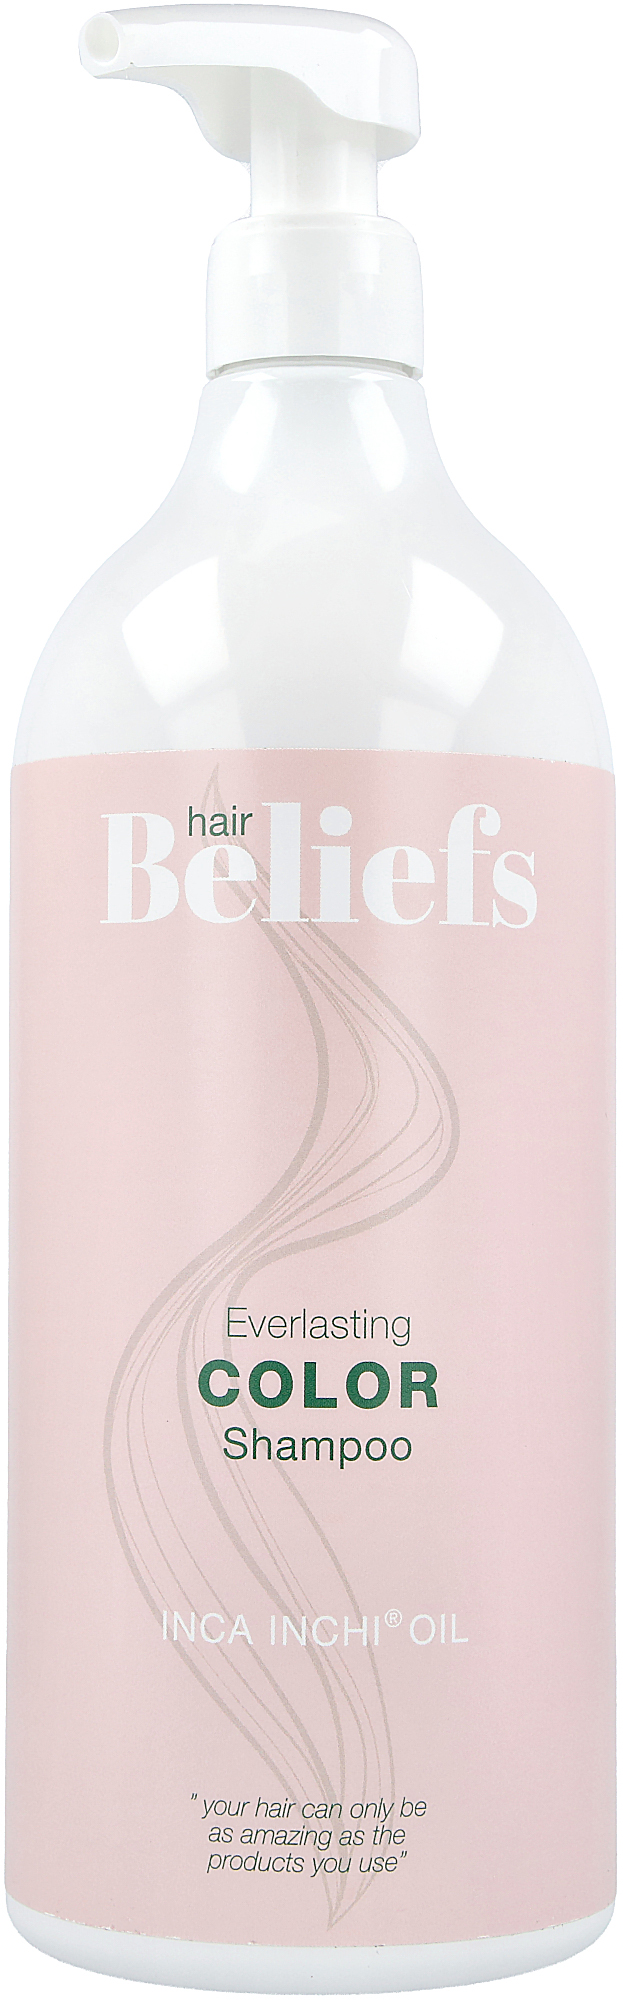 Beliefs Everlasting Color Shampoo ml | lyko.com